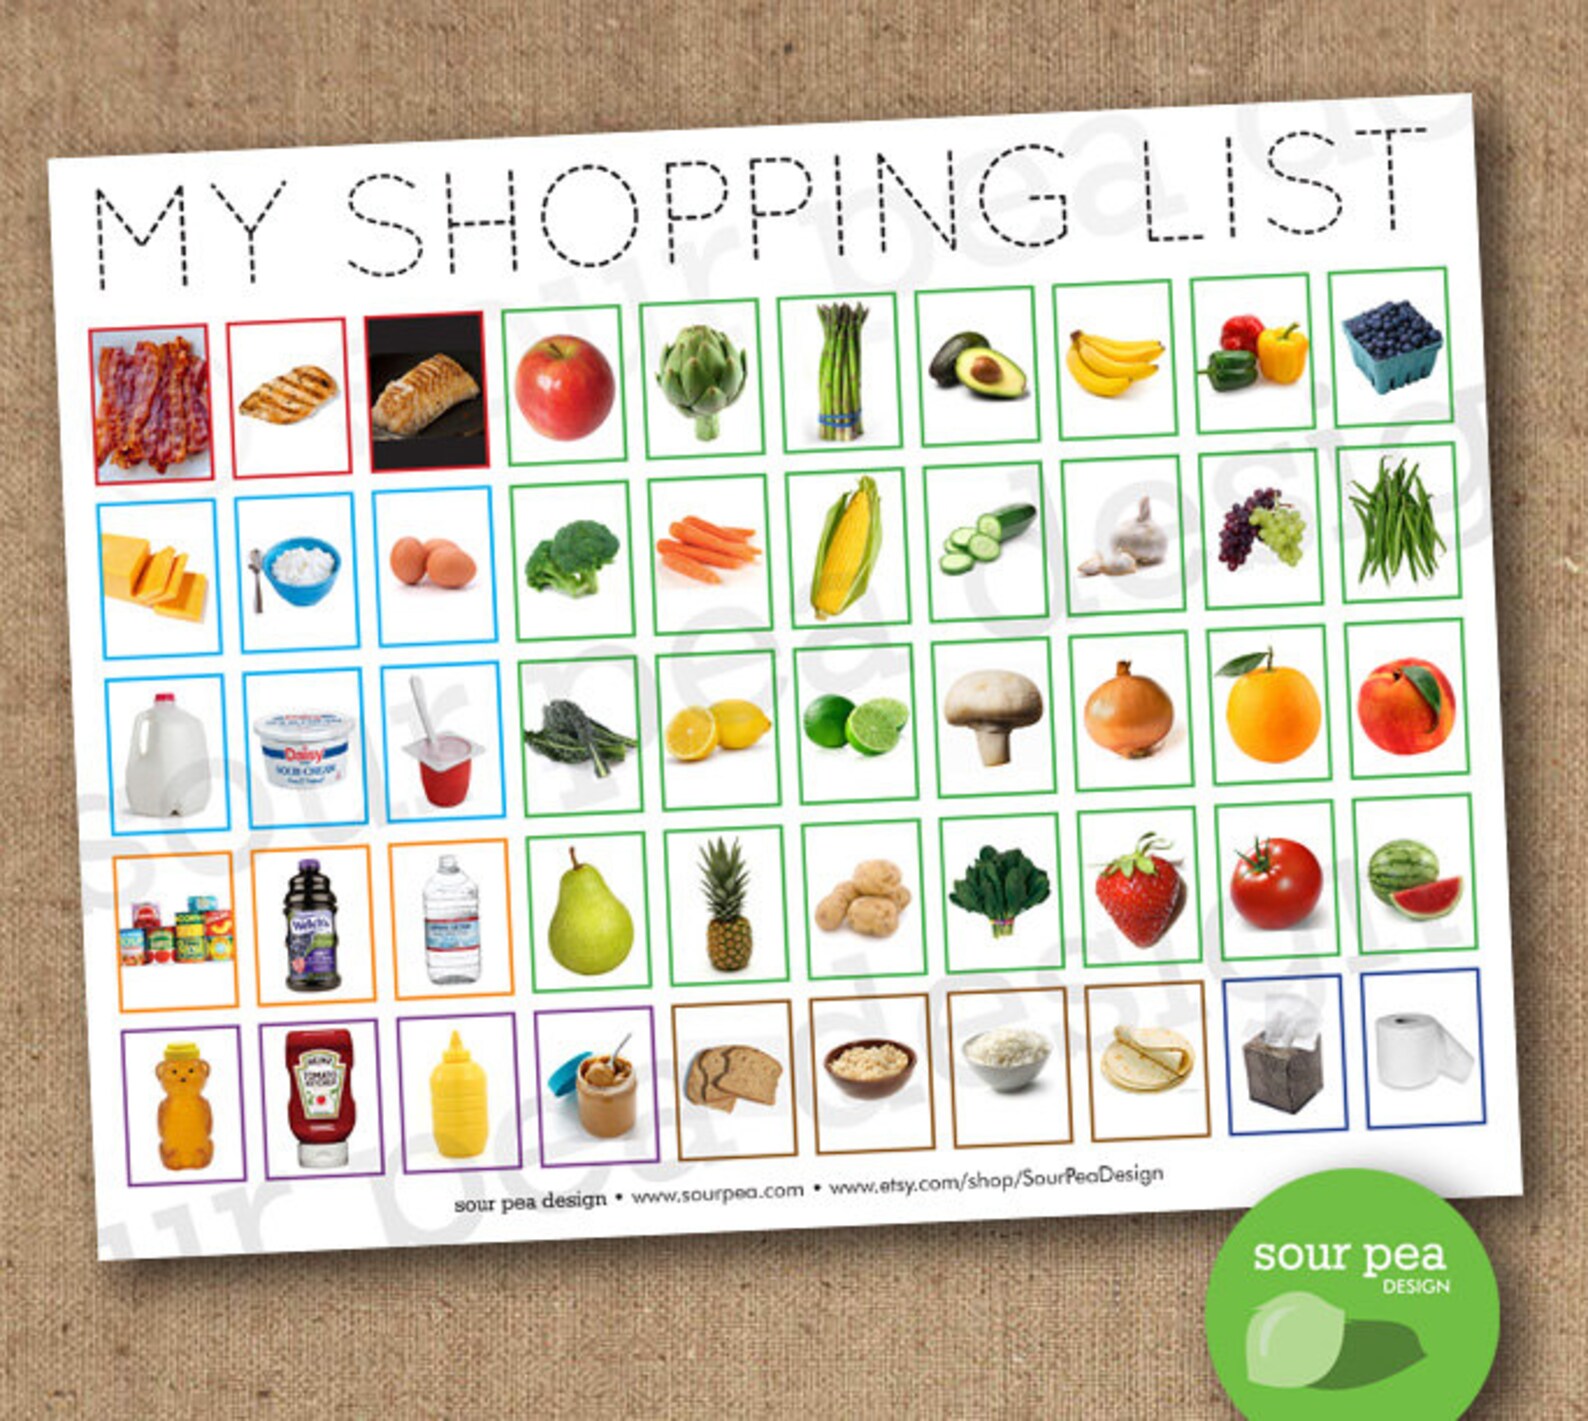 Food shopping list. Shopping list. Shopping list игра. My shopping list. Shopping list food.